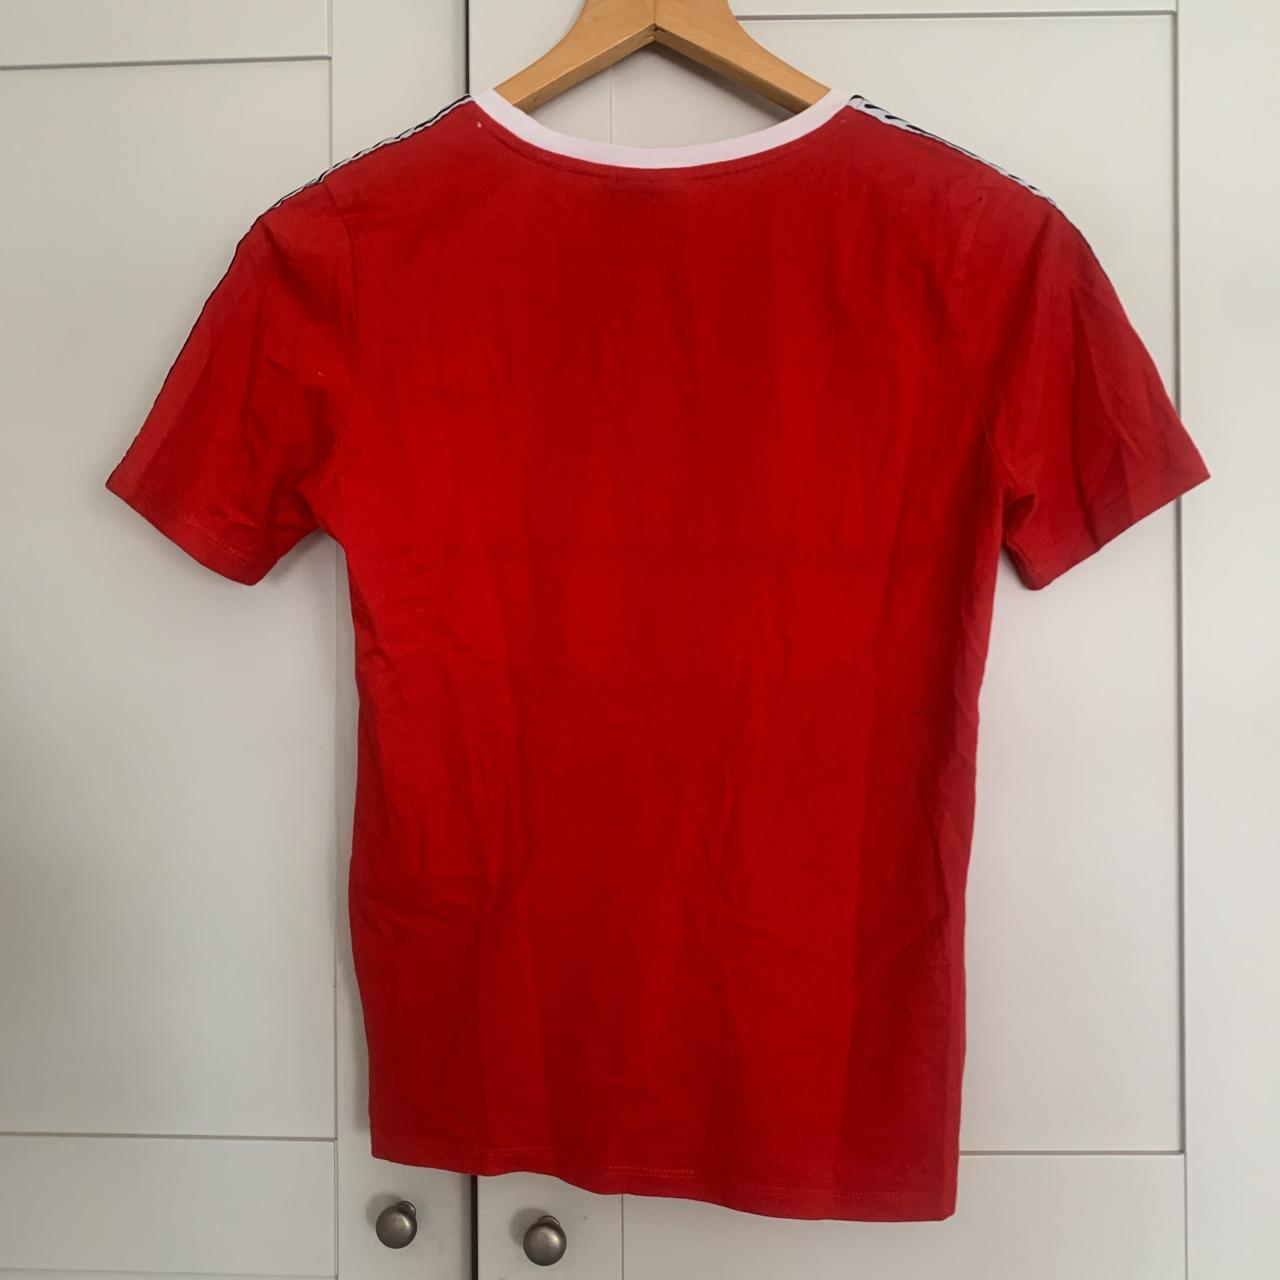 Vintage Umbro Red Shirt with Shoulder Detail (bought... - Depop